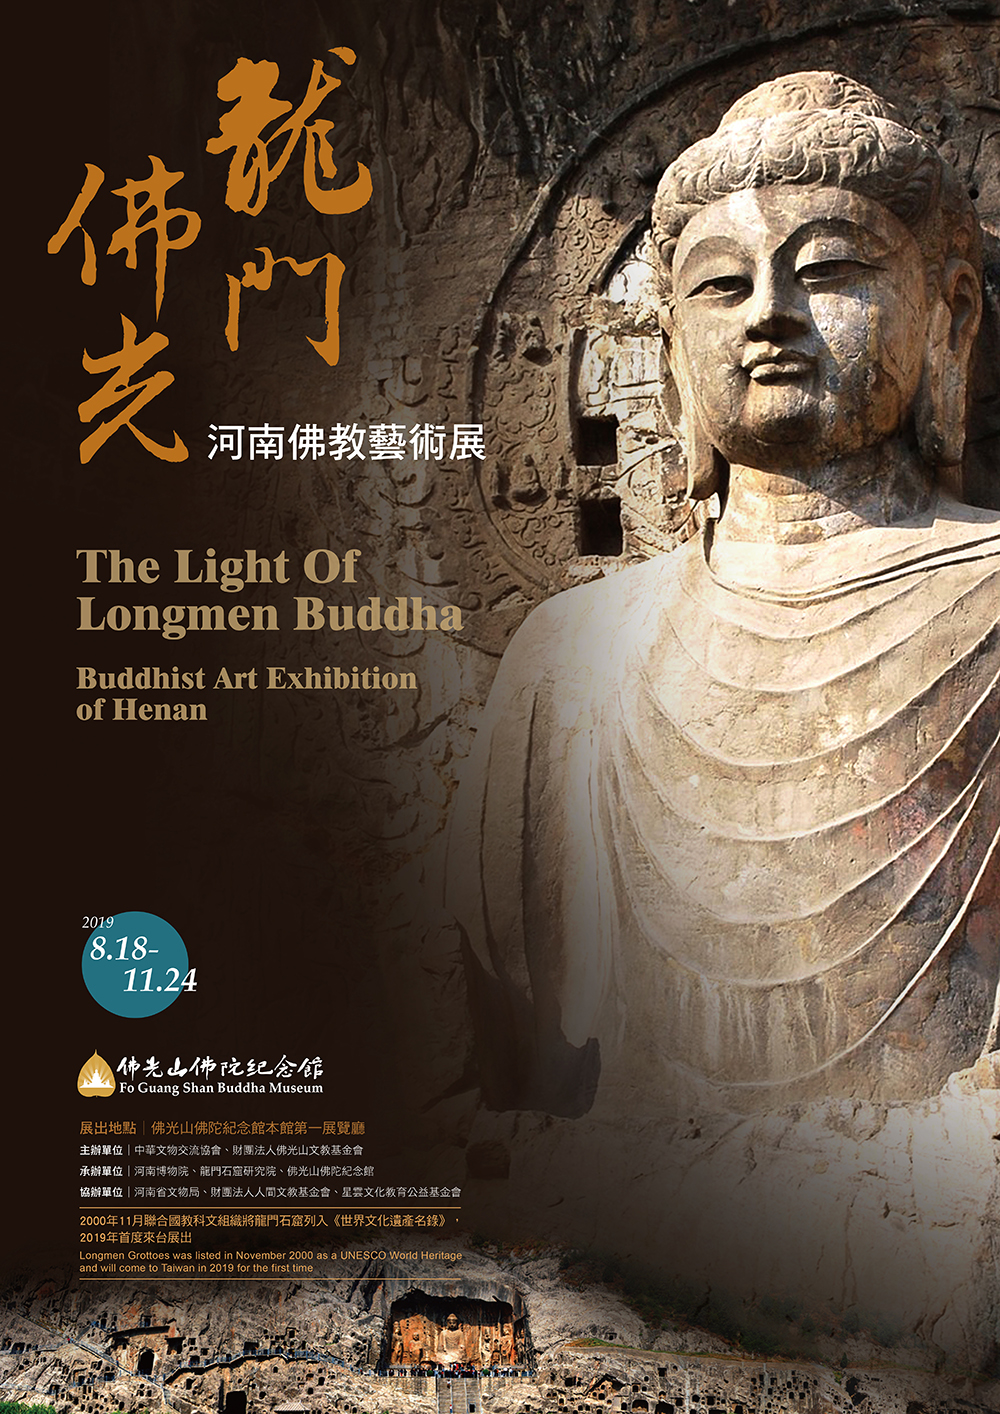 1500年來的第一次龍門石窟佛像抵達台灣(Fo Guang Shan Buddha Museum